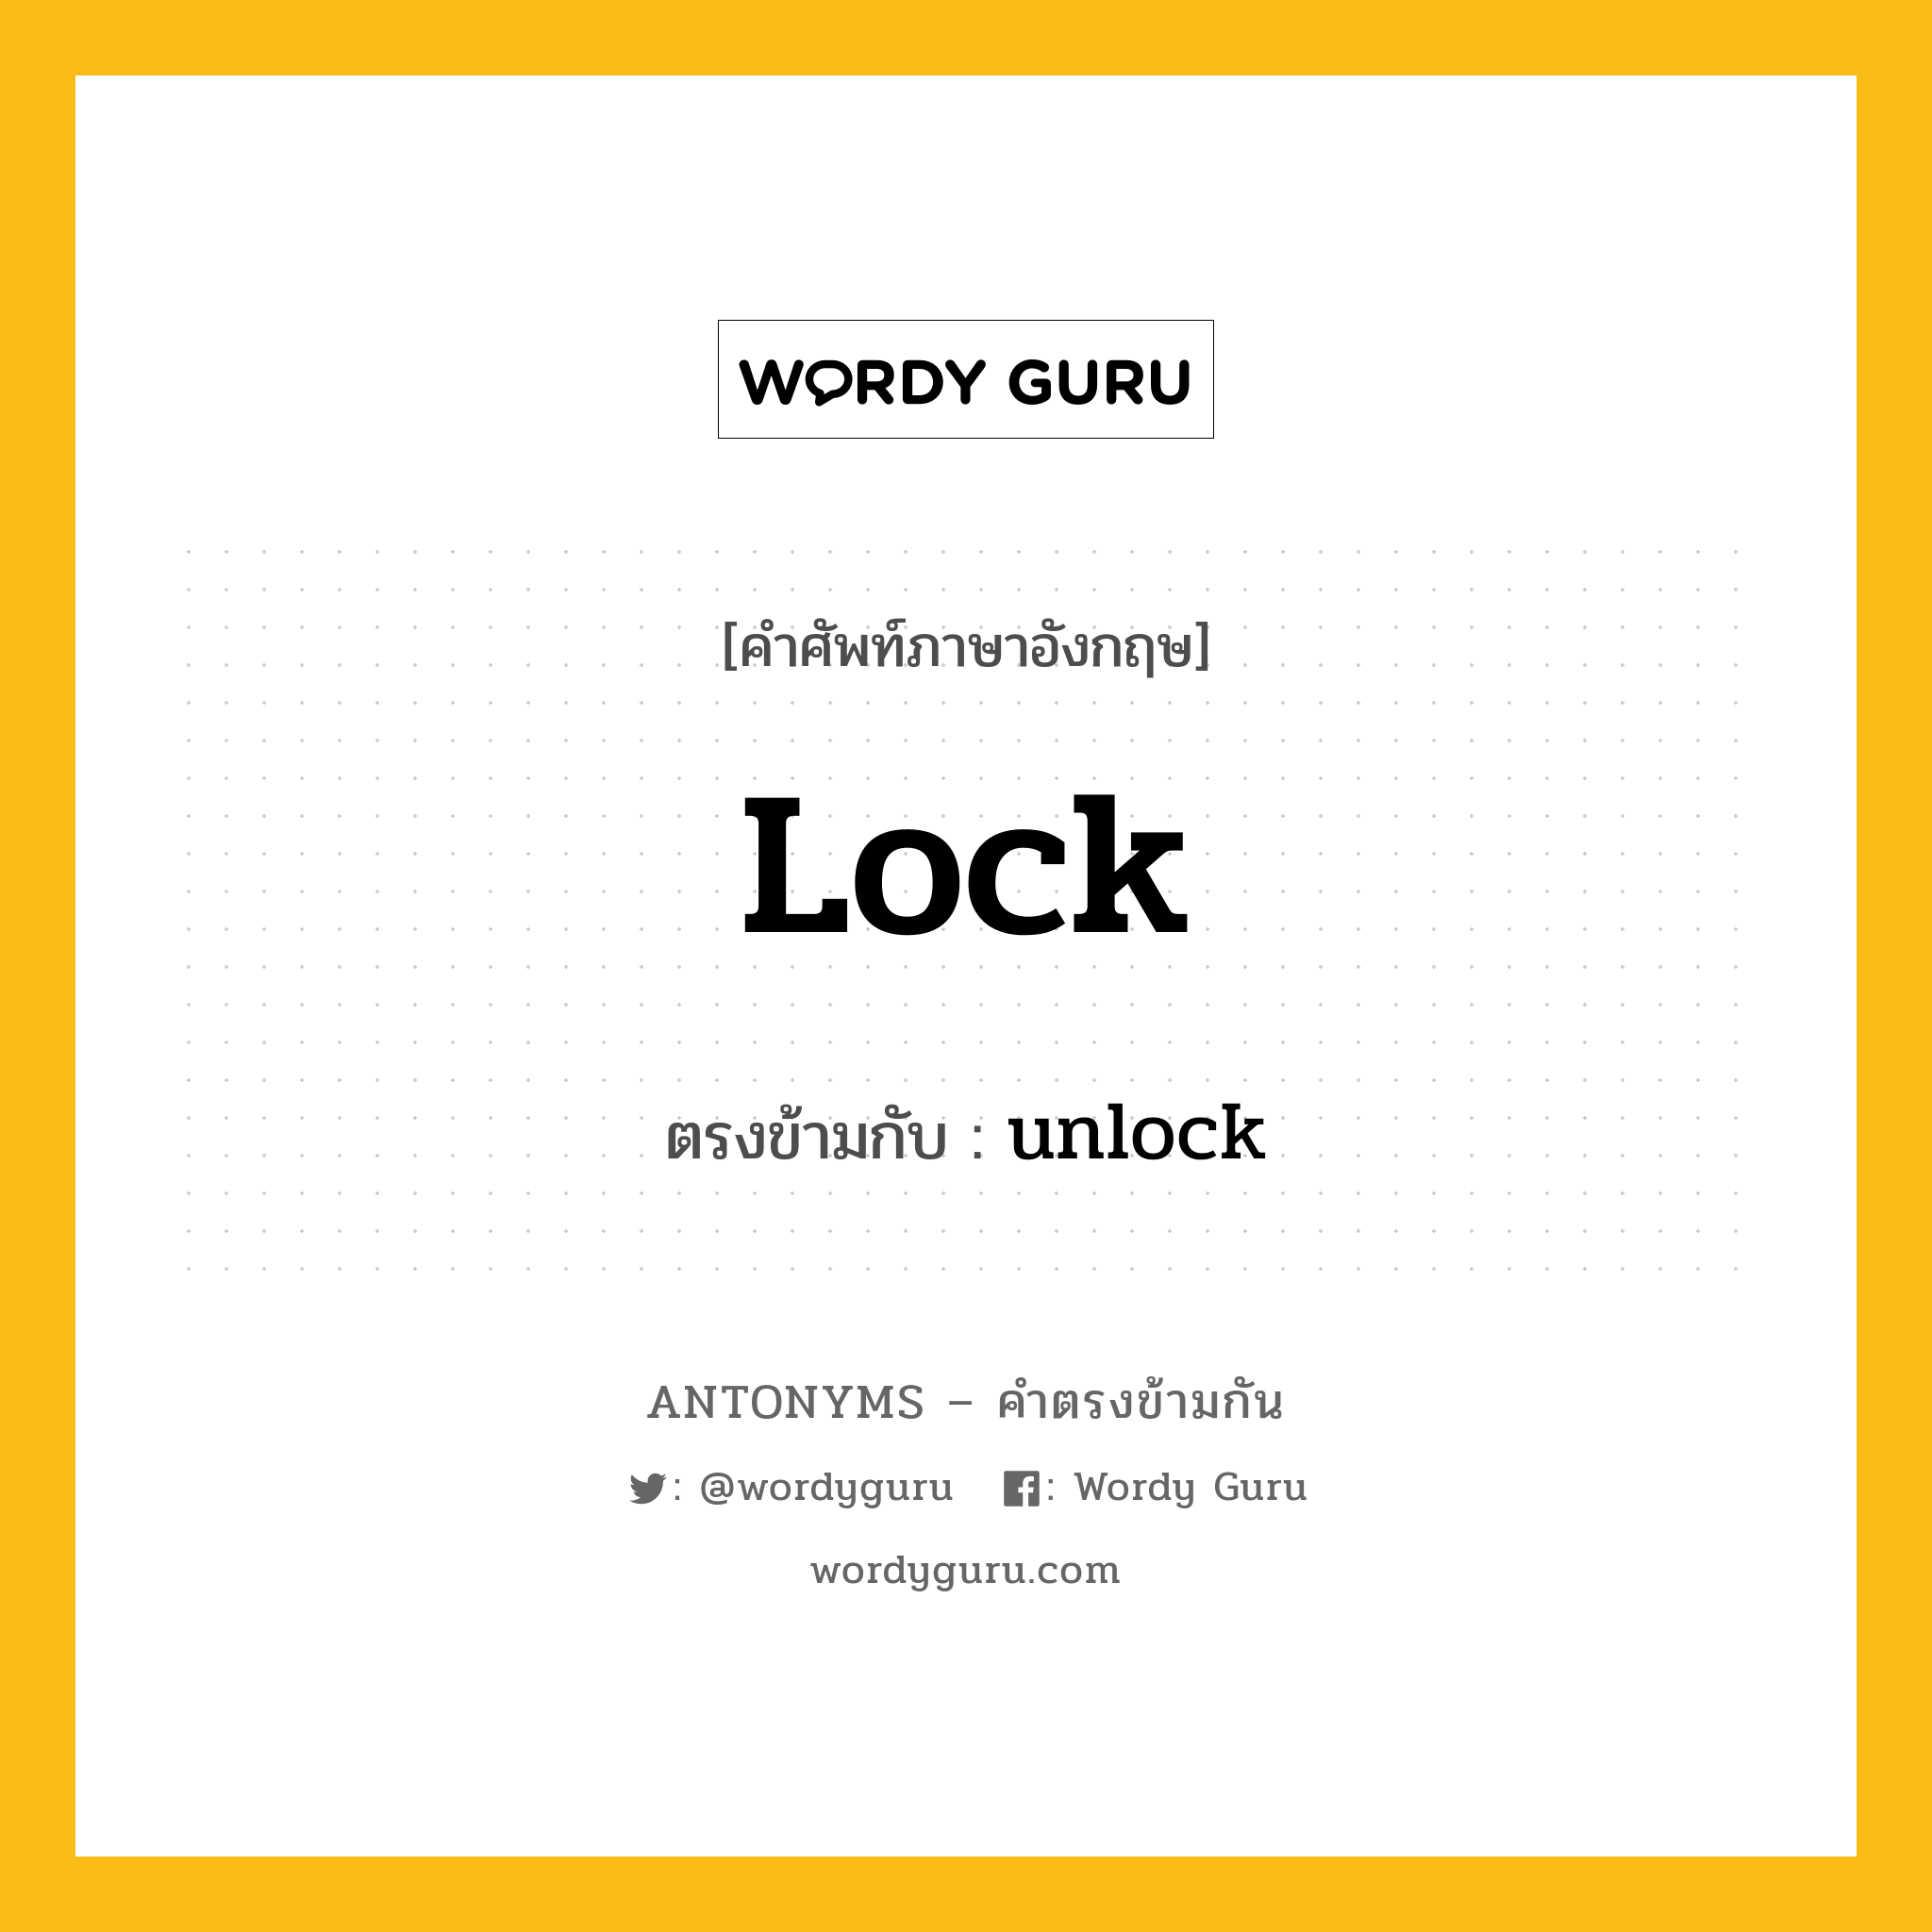 lock เป็นคำตรงข้ามกับคำไหนบ้าง?, คำศัพท์ภาษาอังกฤษ lock ตรงข้ามกับ unlock หมวด unlock